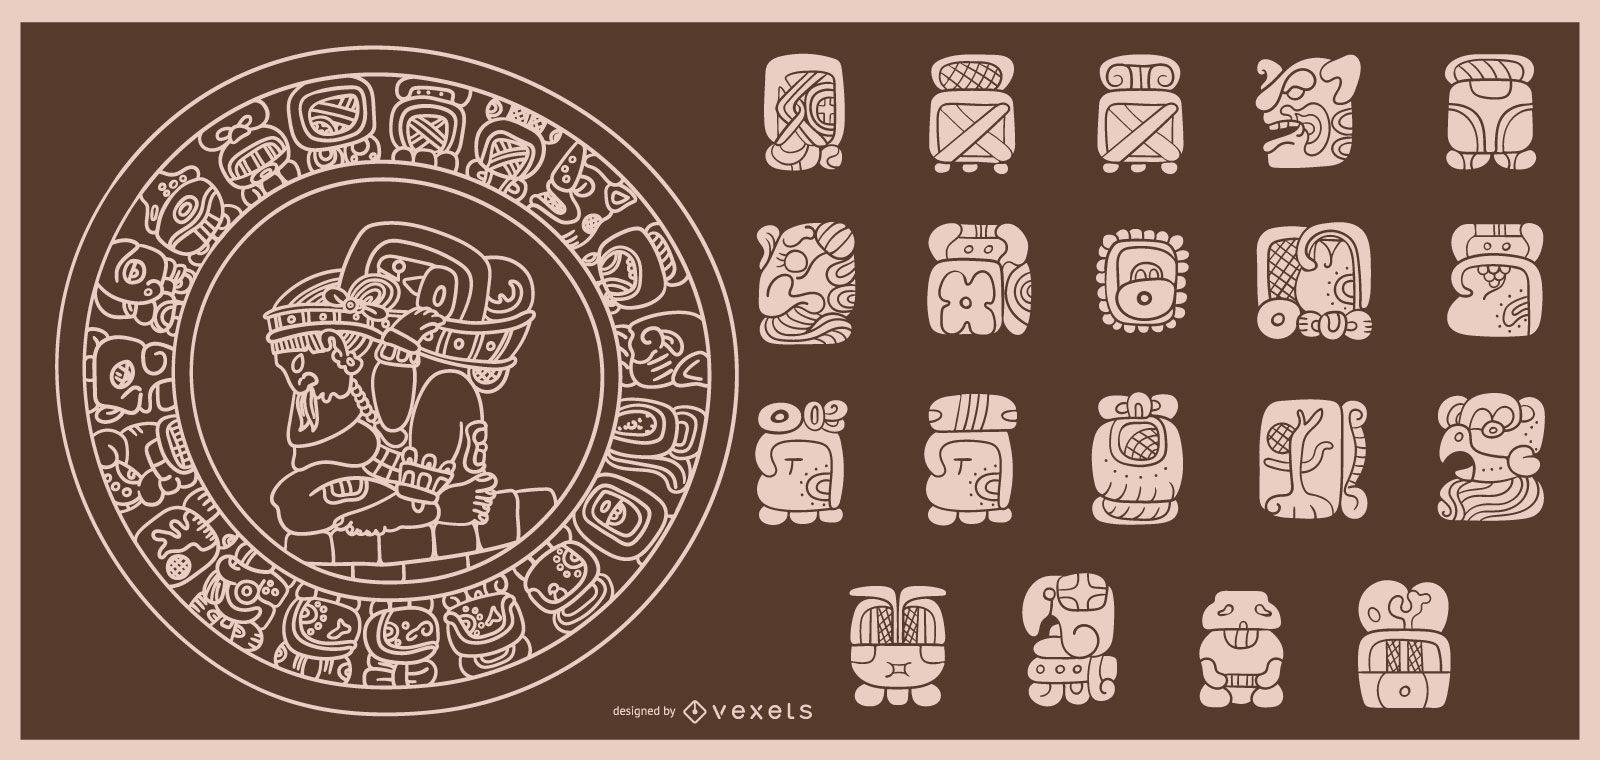 Mayan Calendar Stroke Design